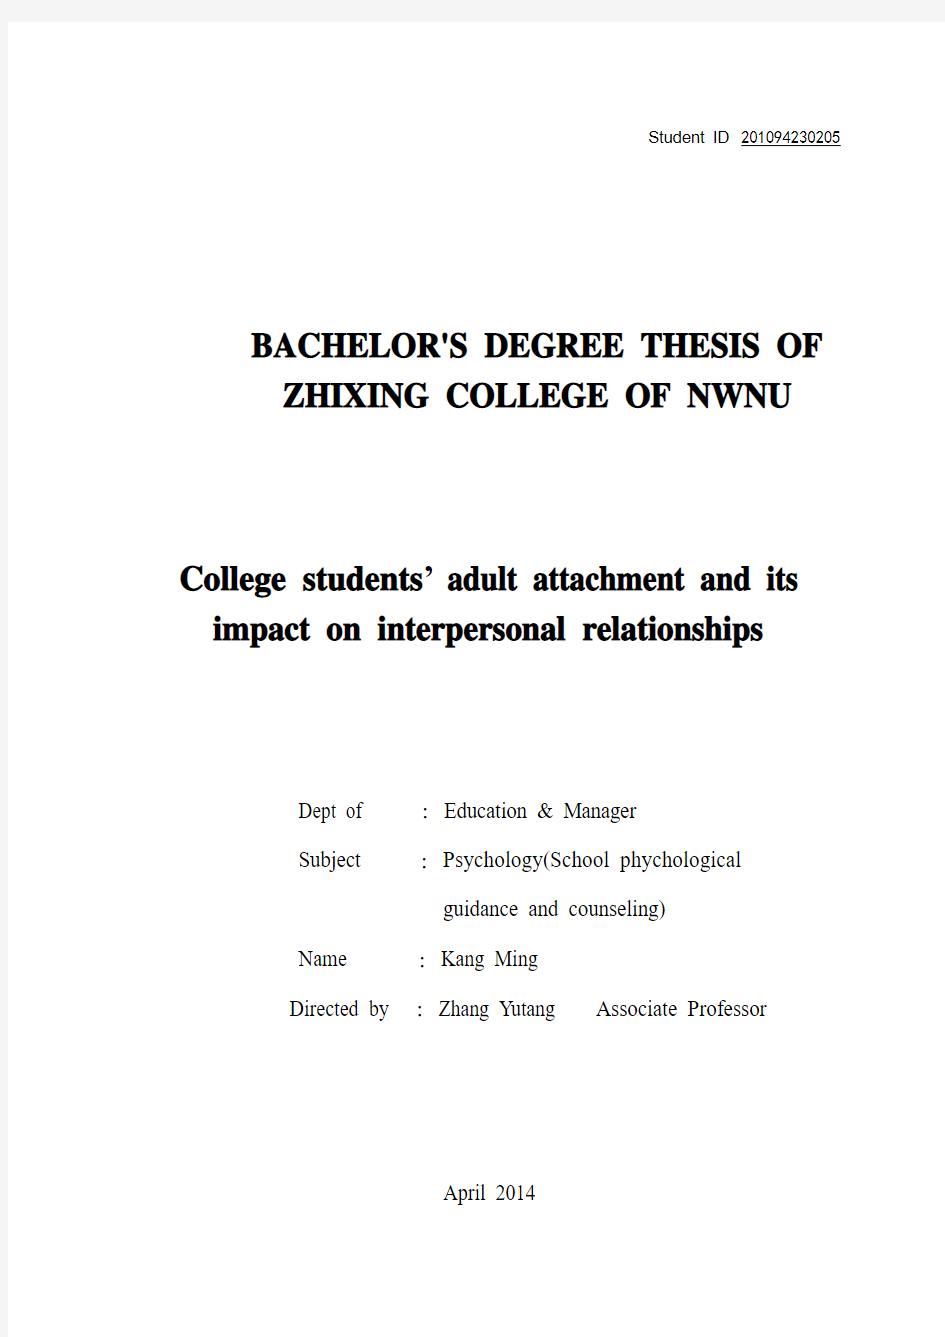 论文：大学生成人依恋及其对人际交往的影响